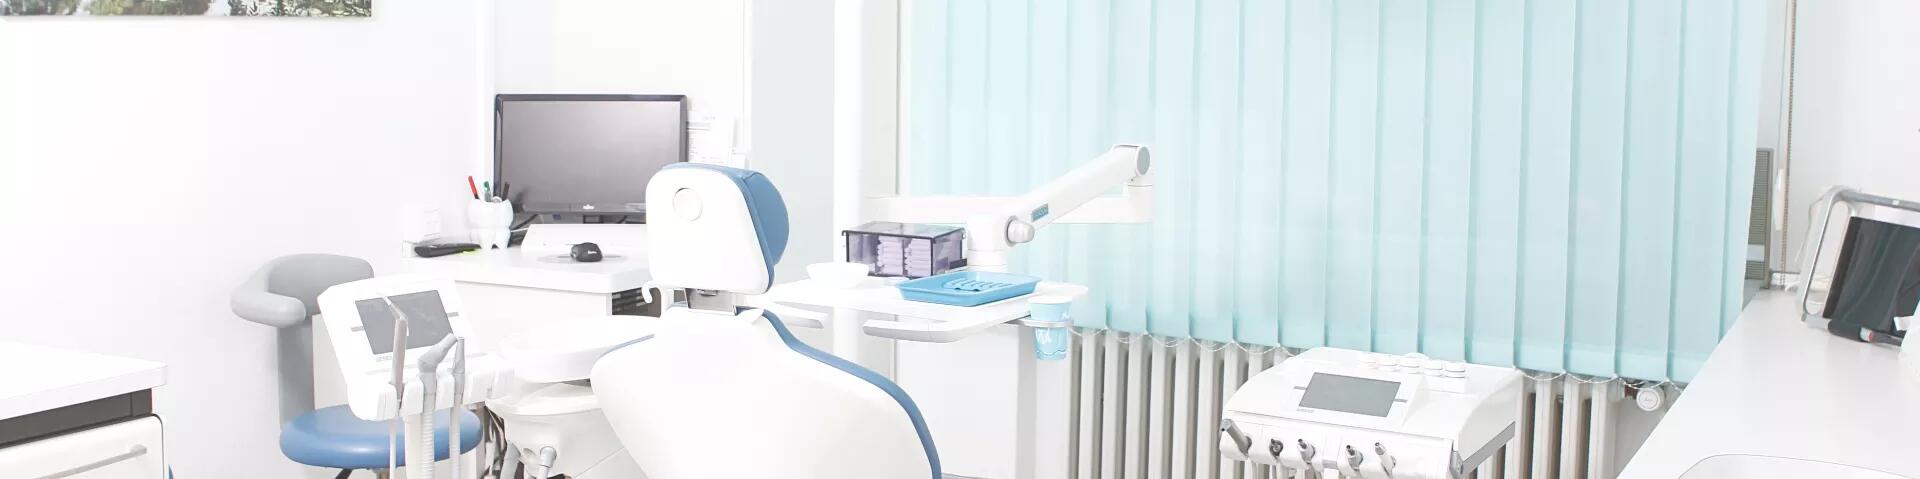  Unsere Zahnarztpraxis in Waidmannslust kurz vorgestellt